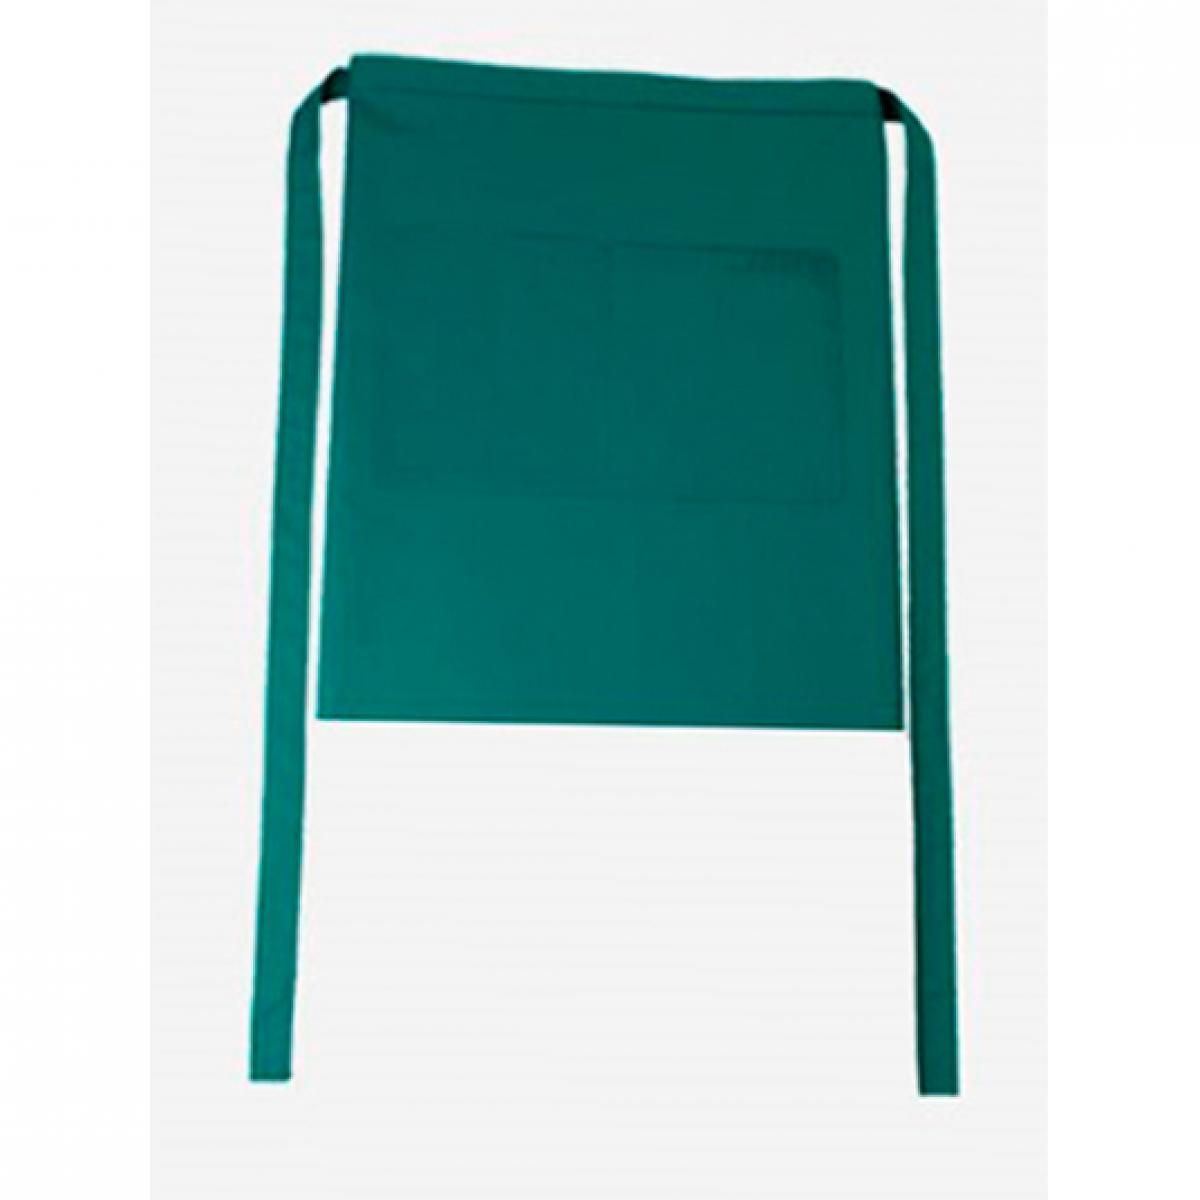 Hersteller: CG Workwear Herstellernummer: 01262-01 Artikelbezeichnung: Bistroschürze Roma Bag 50 x 78 cm Farbe: Evergreen